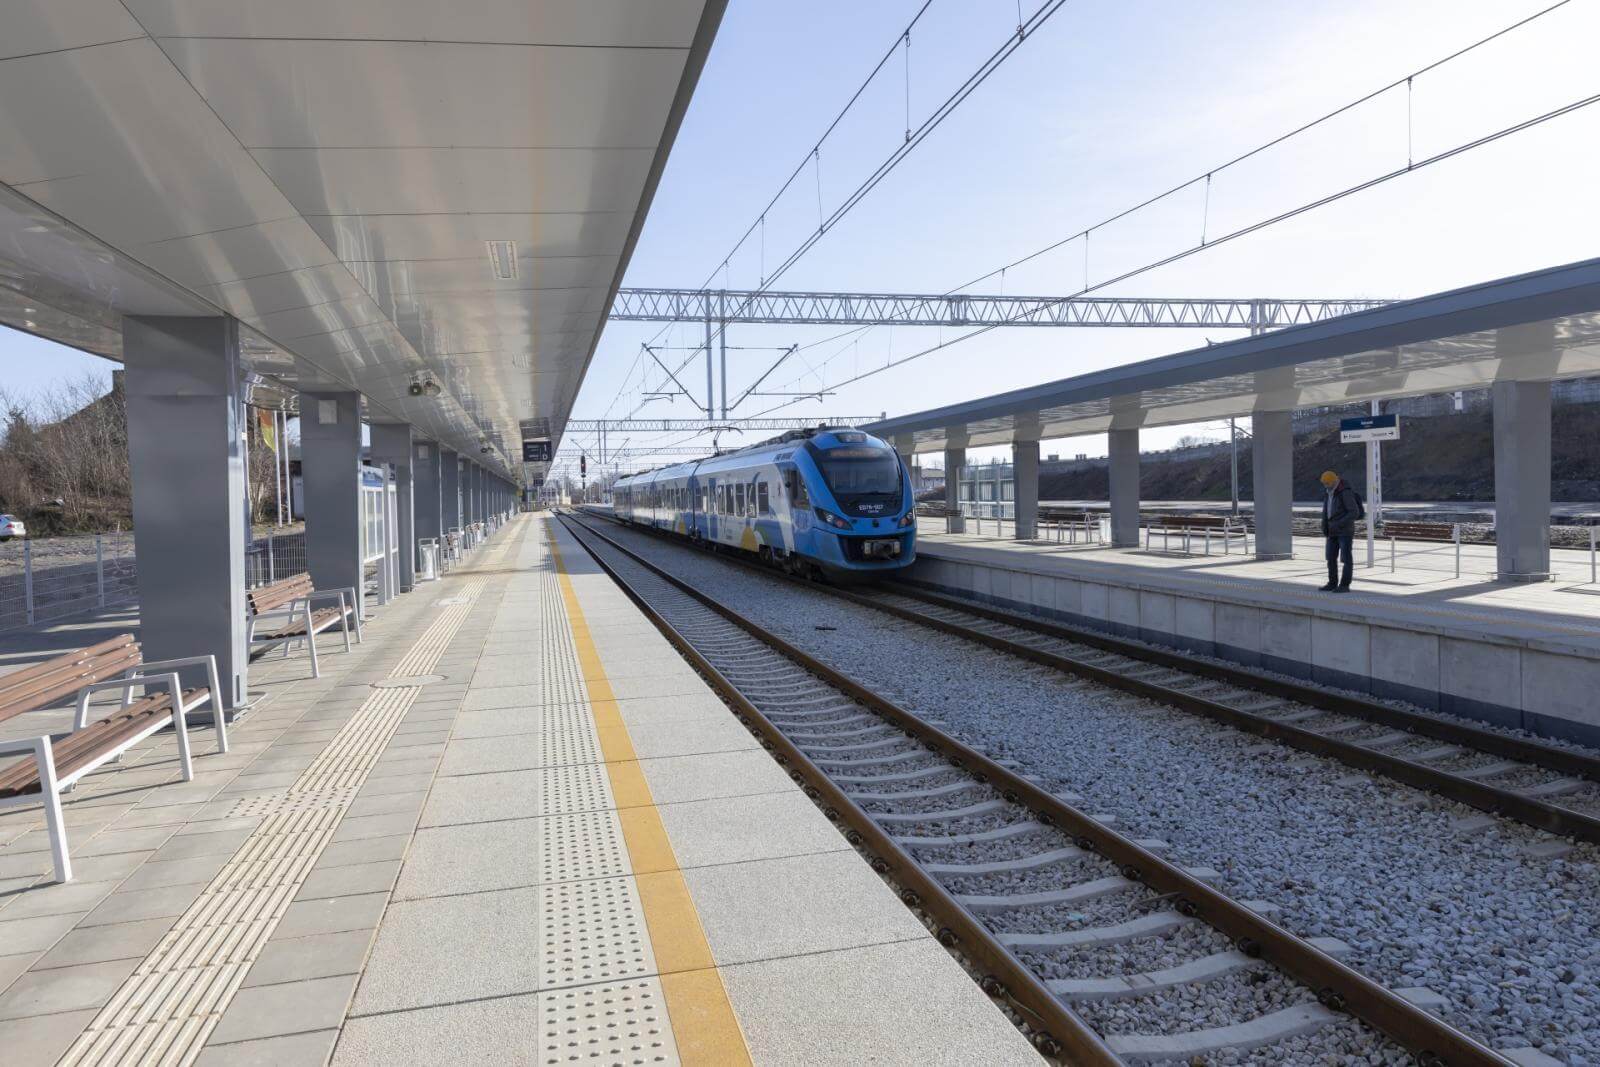 Nowe perony pomiędzy Poznaniem a Szczecinem zapewniają wygodniejsze podróże pociągami